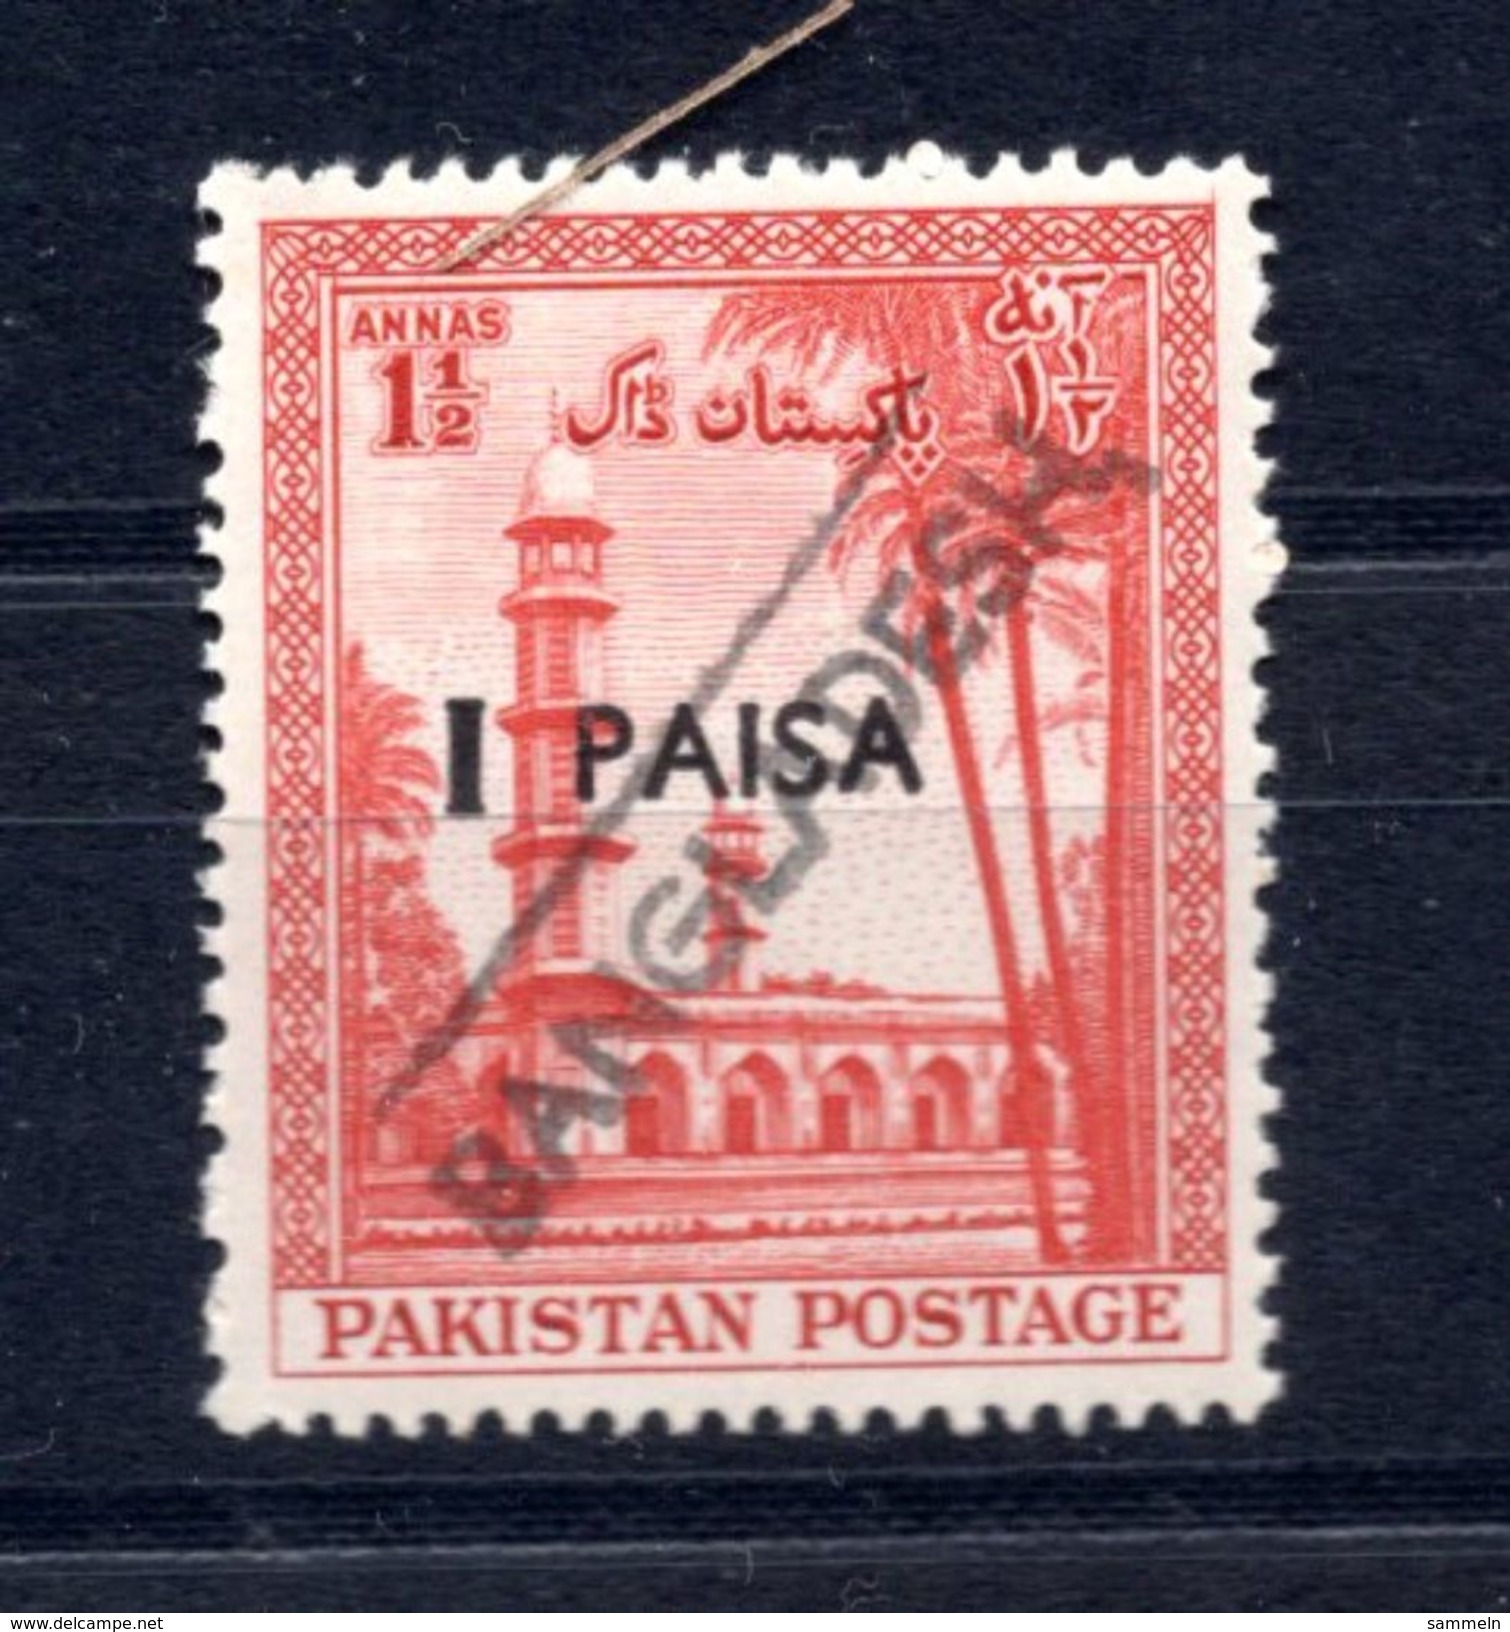 9239 Bangla Desh Überdruck Overprint Provisorien Pakistan Ca. 1971/1972 Postfrisch Mnh - Bangladesch